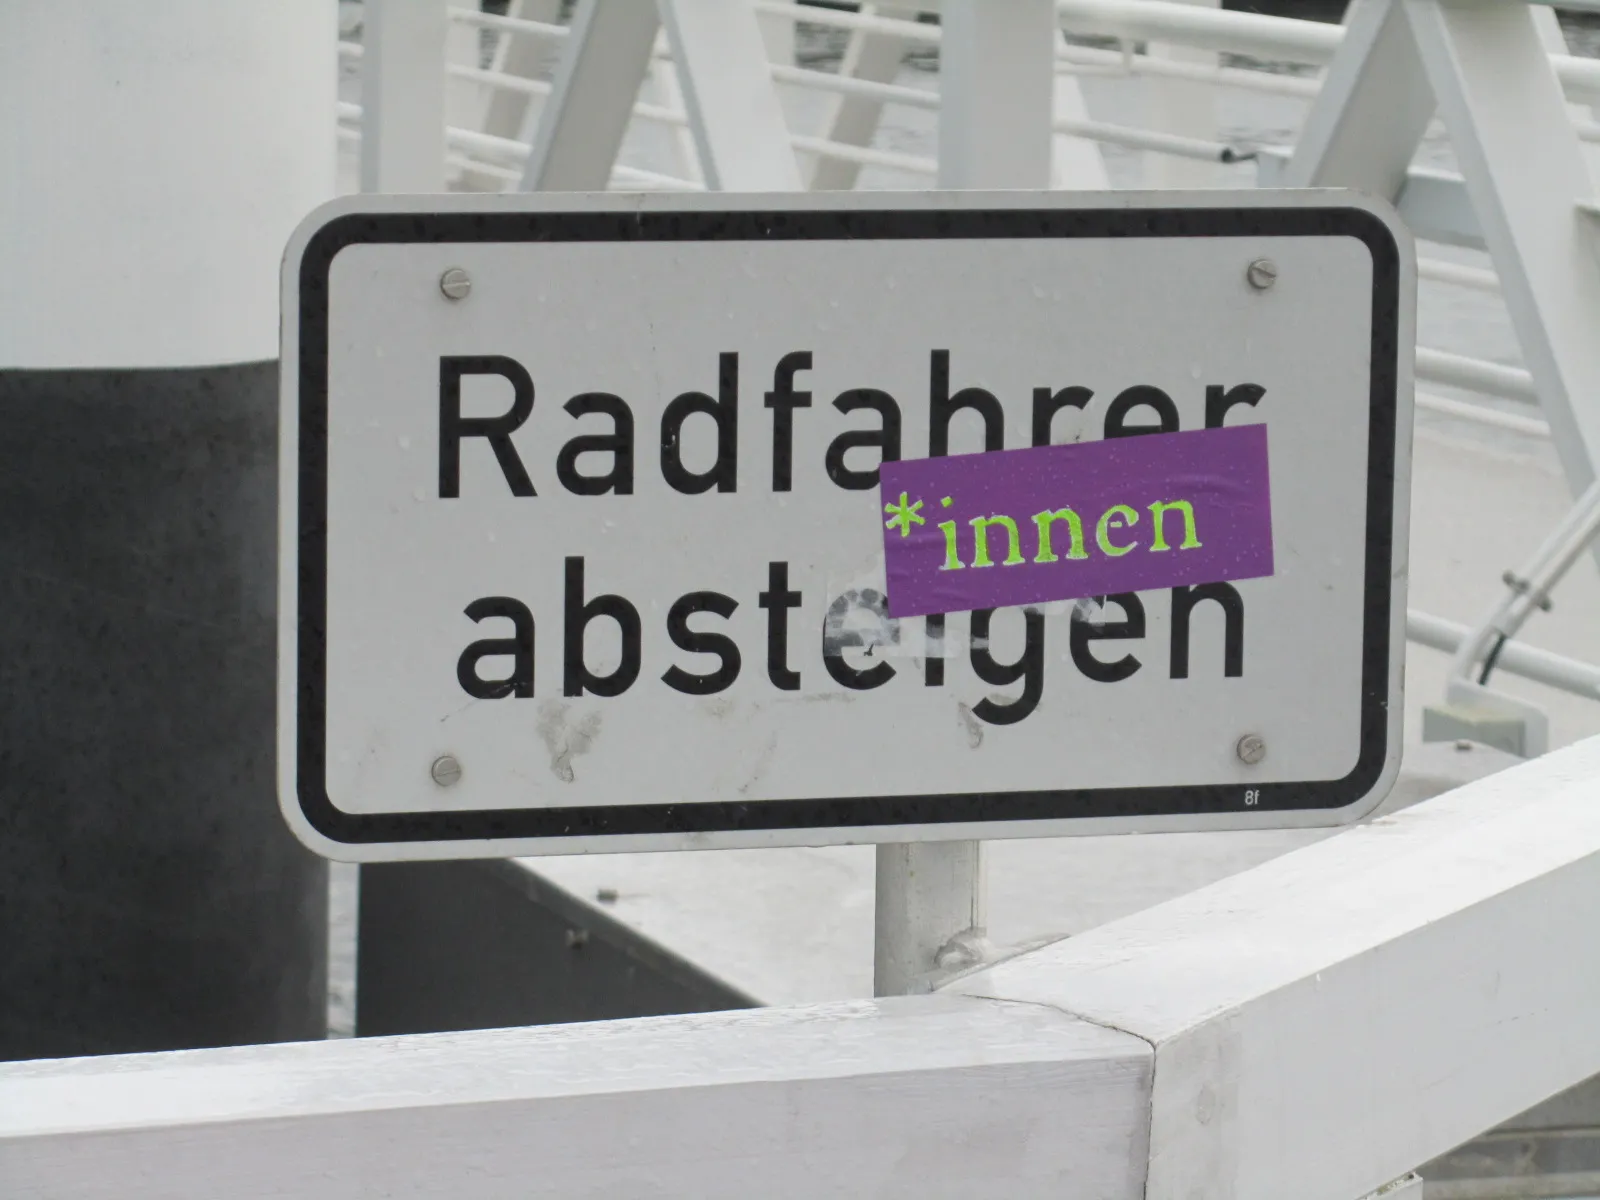 Ein Schild ist zu sehen, das "Radfahrer absteigen" besagt, auf dem ein Aufkleber mit der Aufschrift "*innen" angebracht wurde.